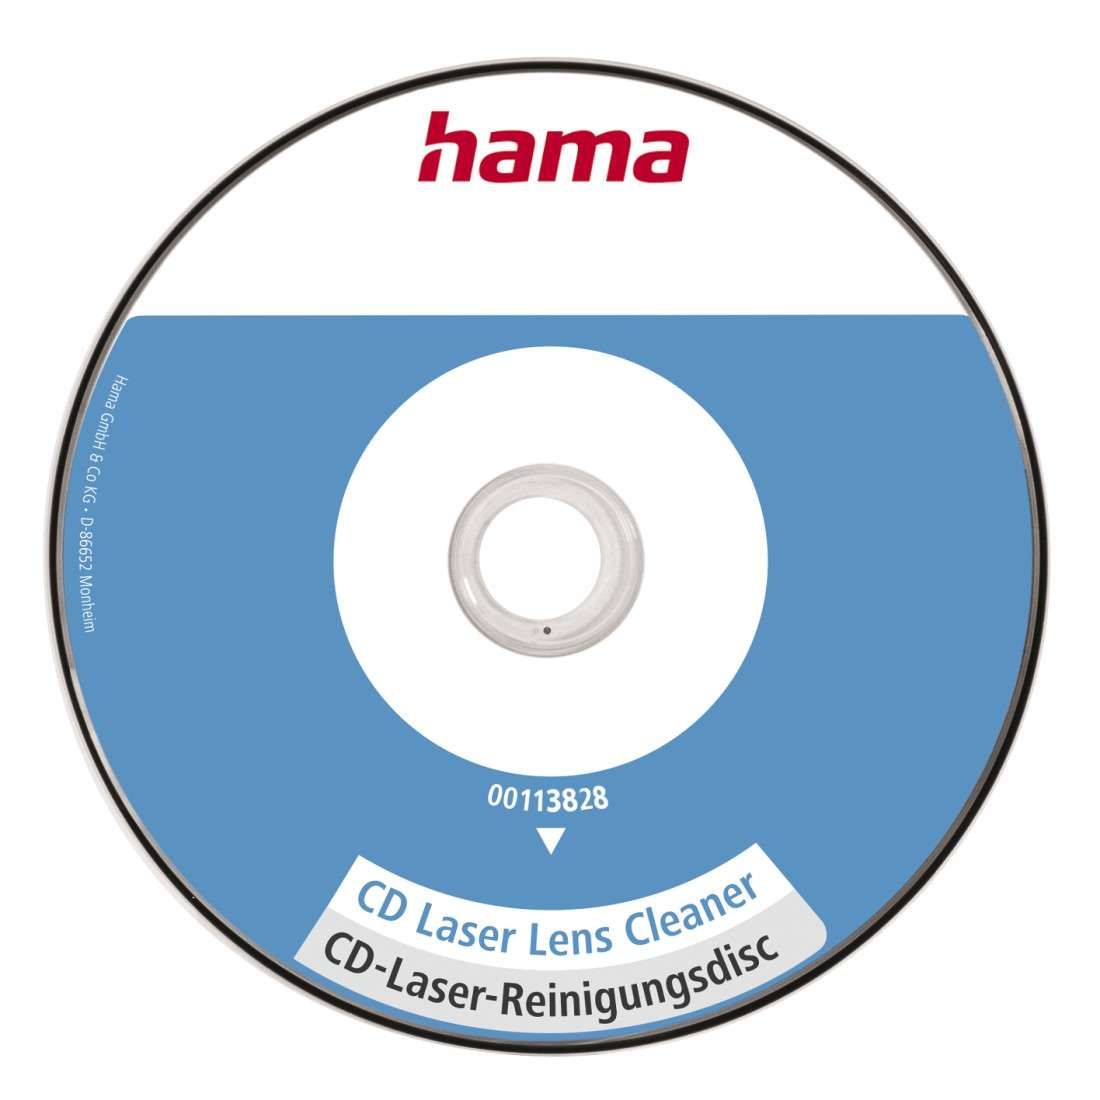 HAMA CD-Laser-Reinigungsdisk, mit Reinigungsflüssigkeit, einzeln verpackt